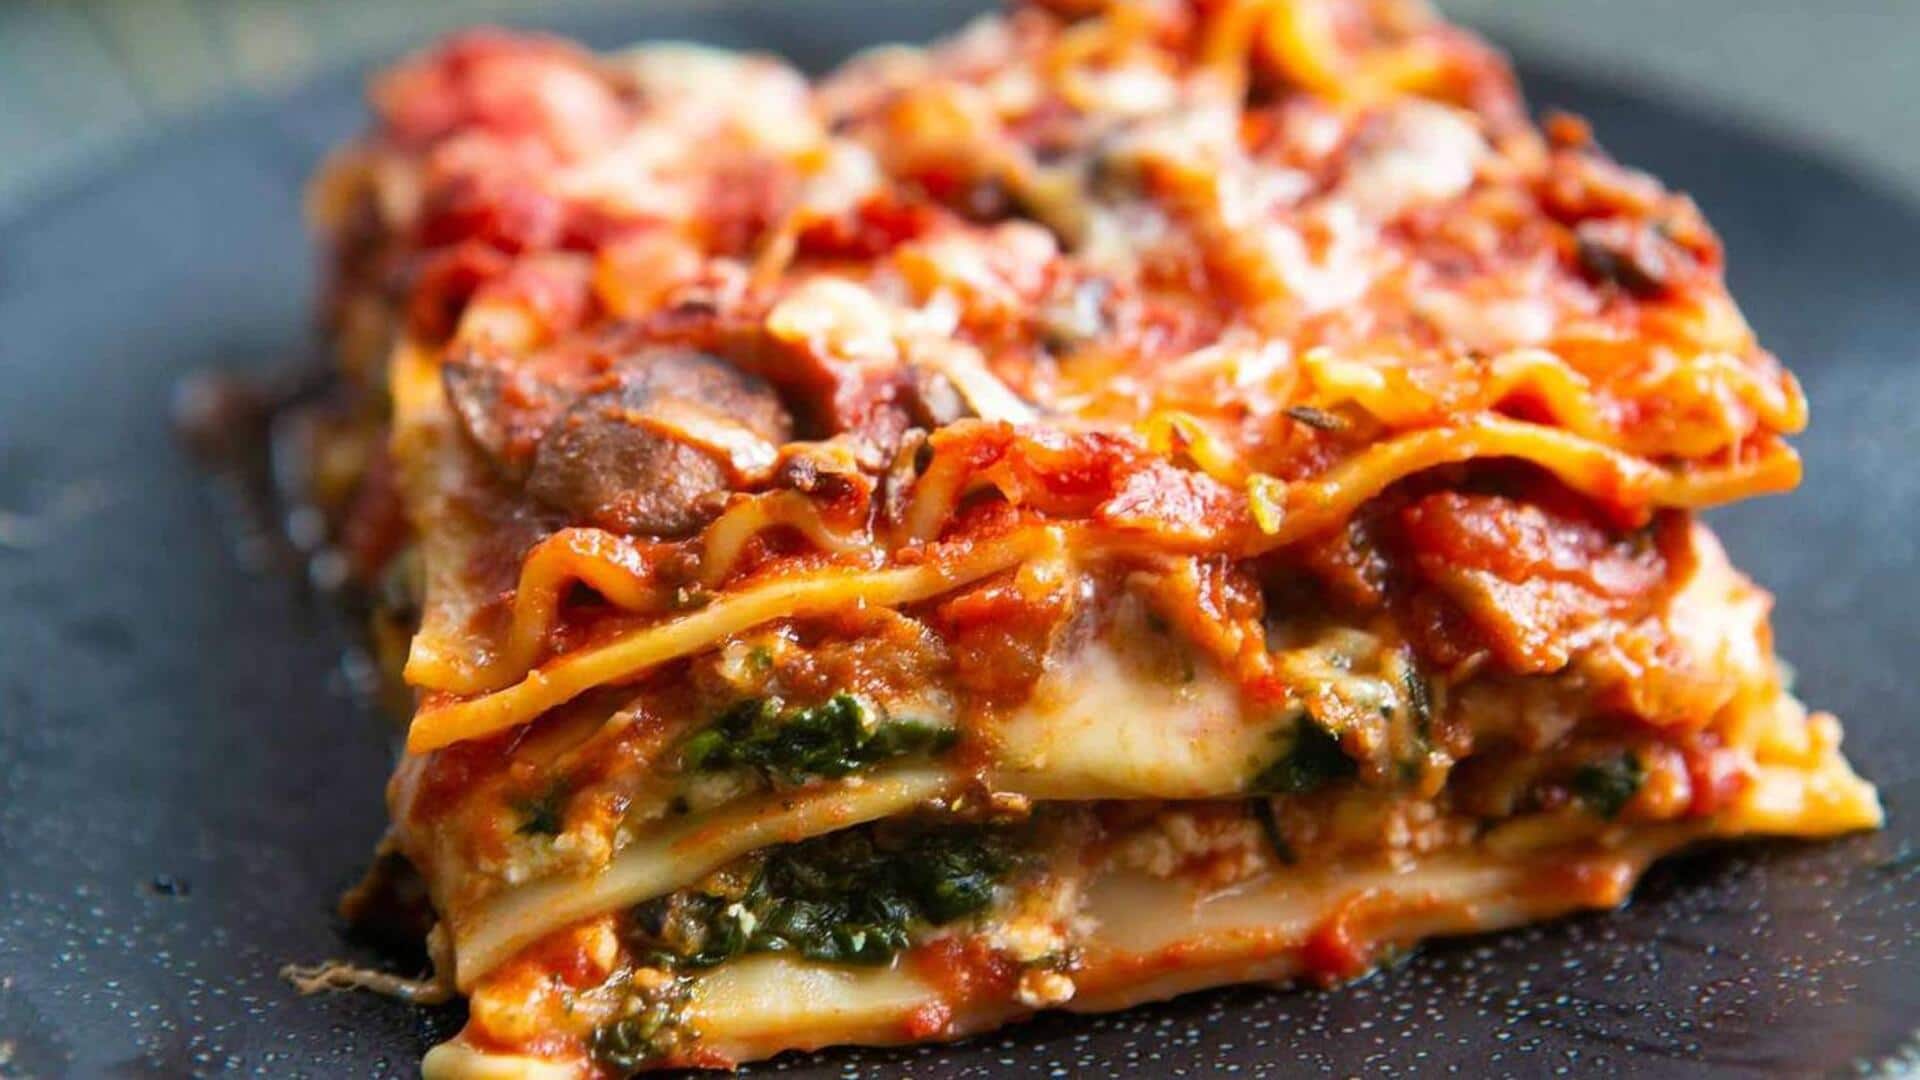 Try this Indo-Italian vegetarian lasagna recipe